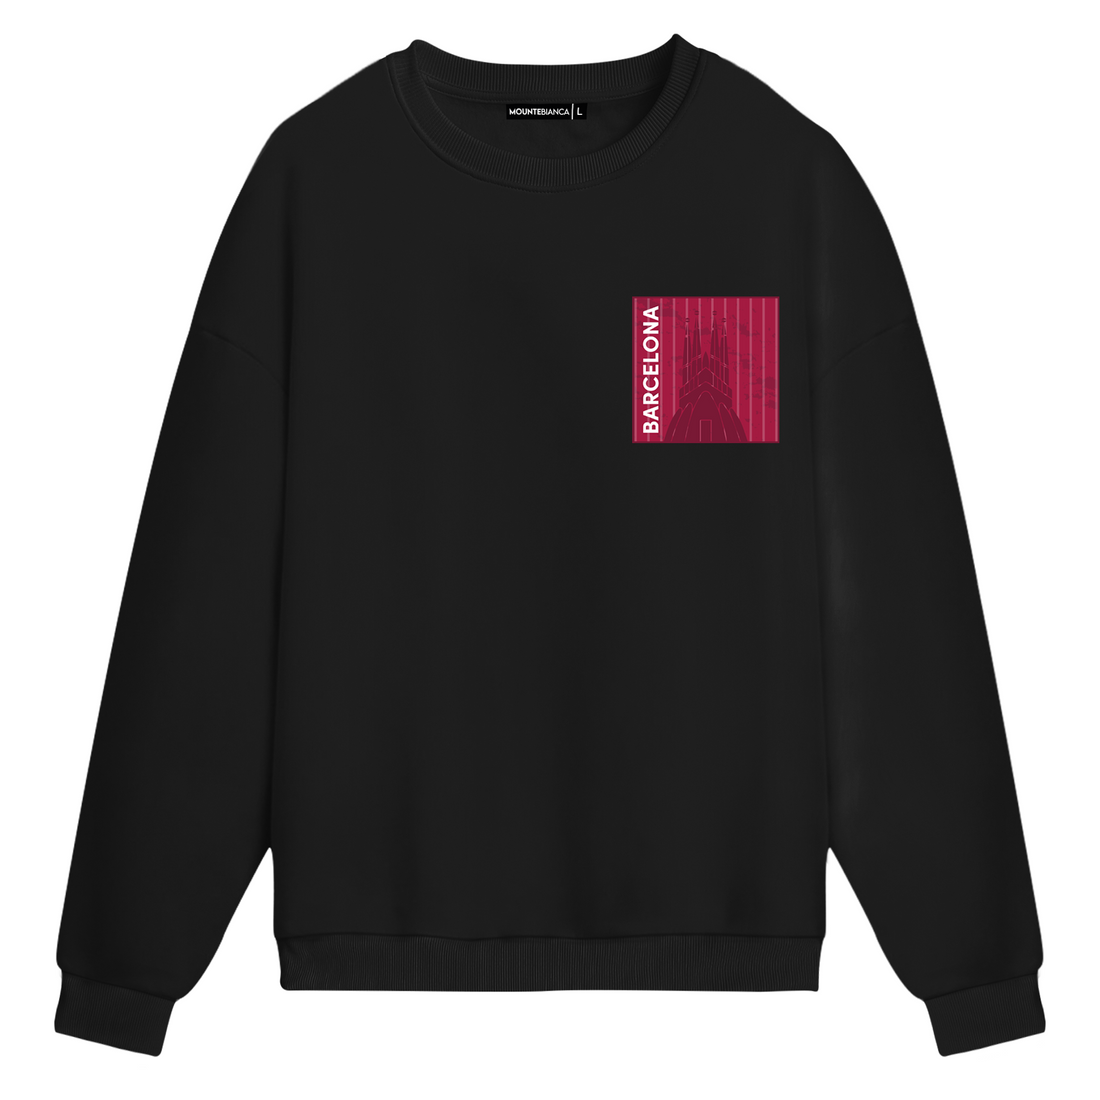 Barcelona - Sweatshirt